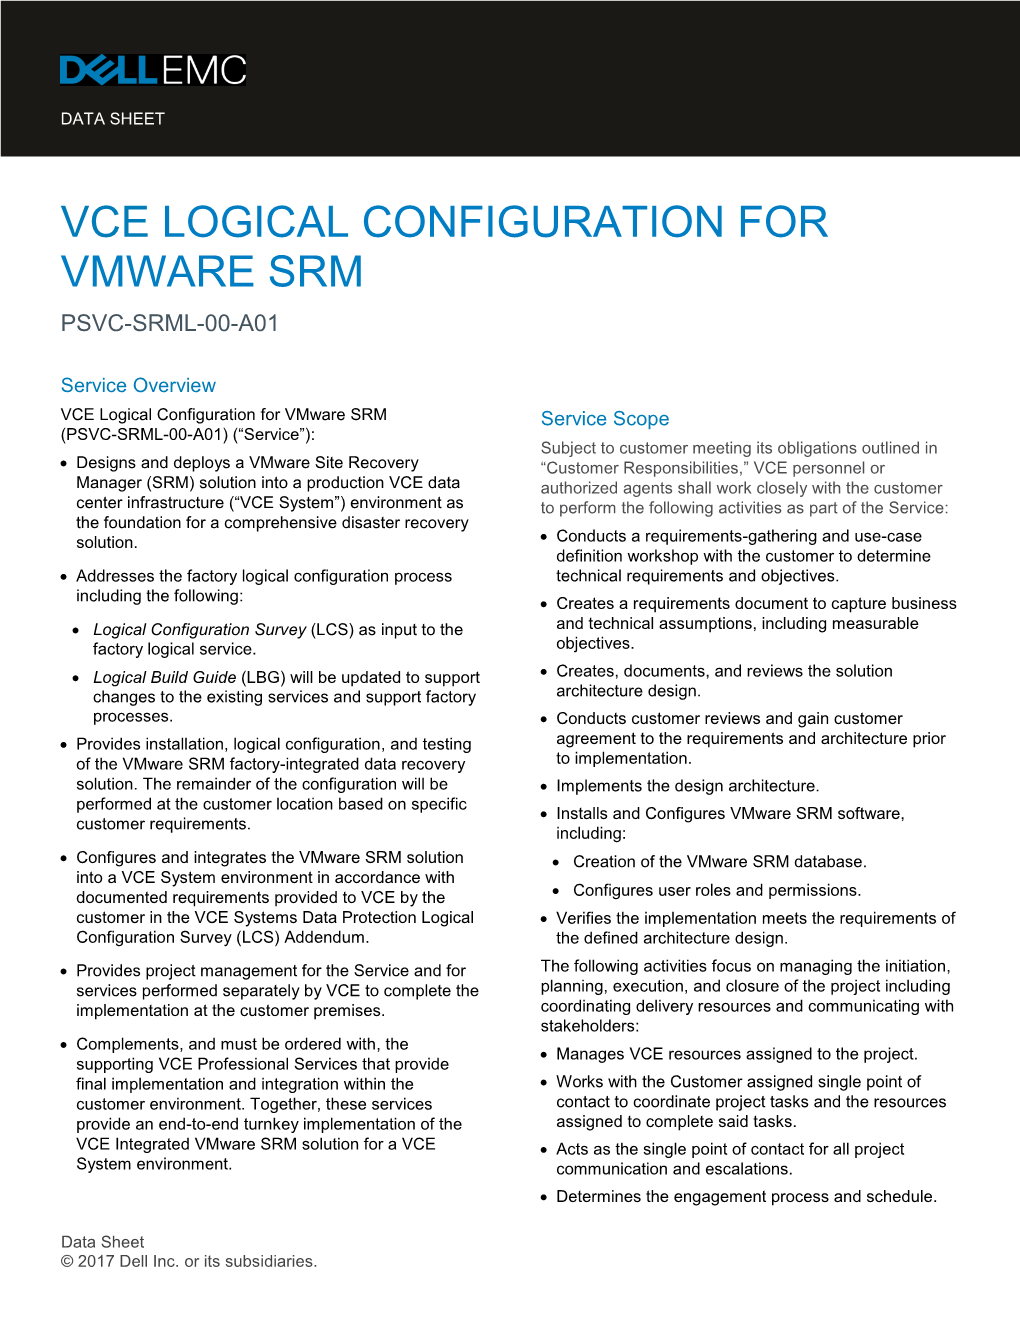 Vce Logical Configuration for Vmware Srm Psvc-Srml-00-A01